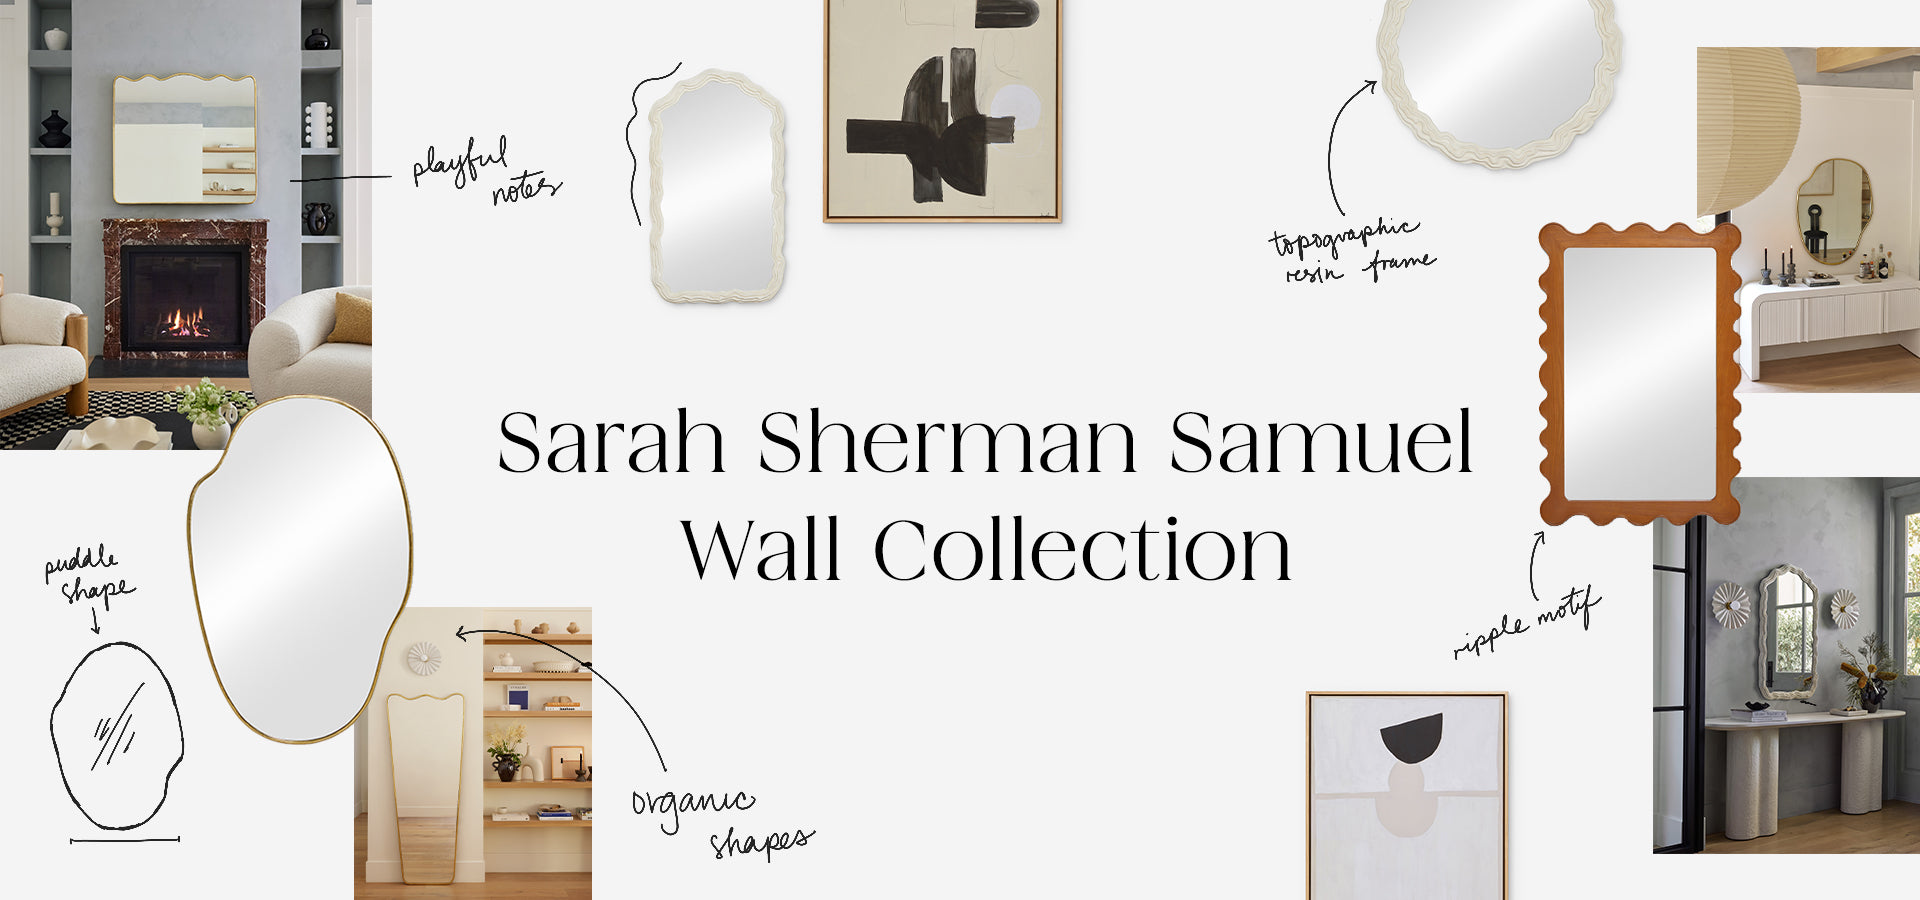 Sarah Sherman Samuel's New Wave